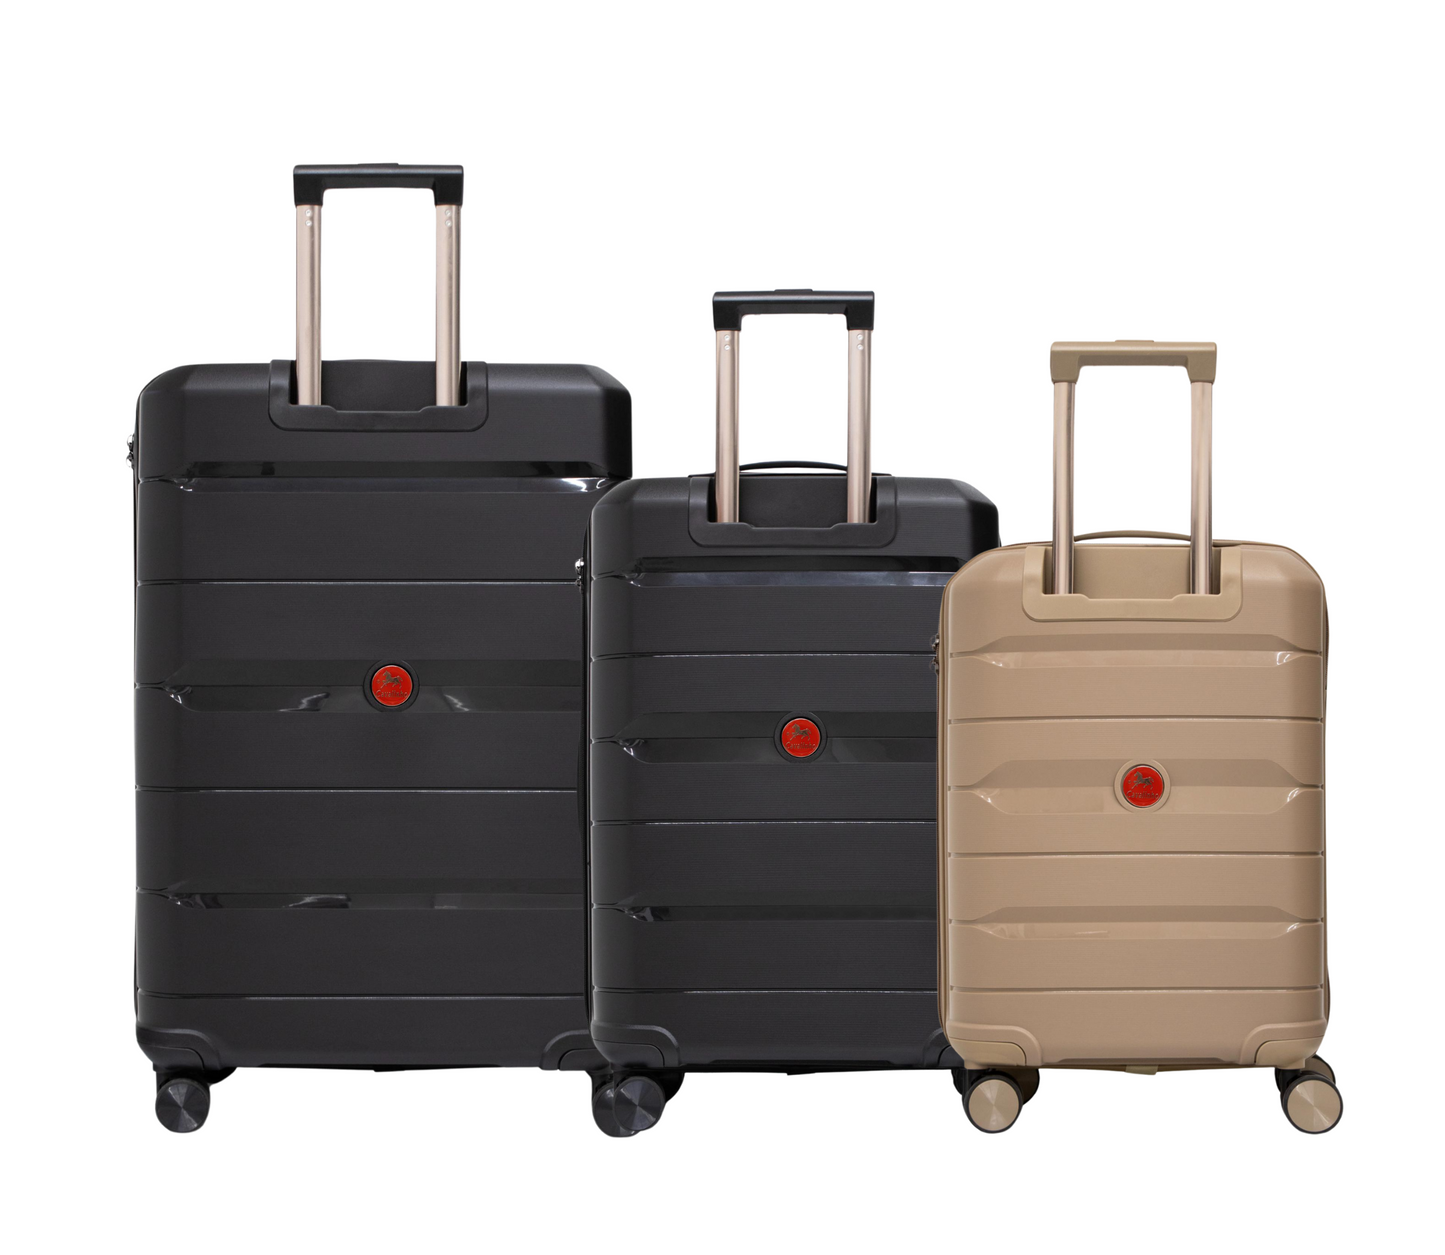 #color_ GoldenRod Black Black | Cavalinho Canada & USA Oasis 3 Piece Luggage Set (20", 24" & 28") - GoldenRod Black Black - 68040001.070101.202428._3